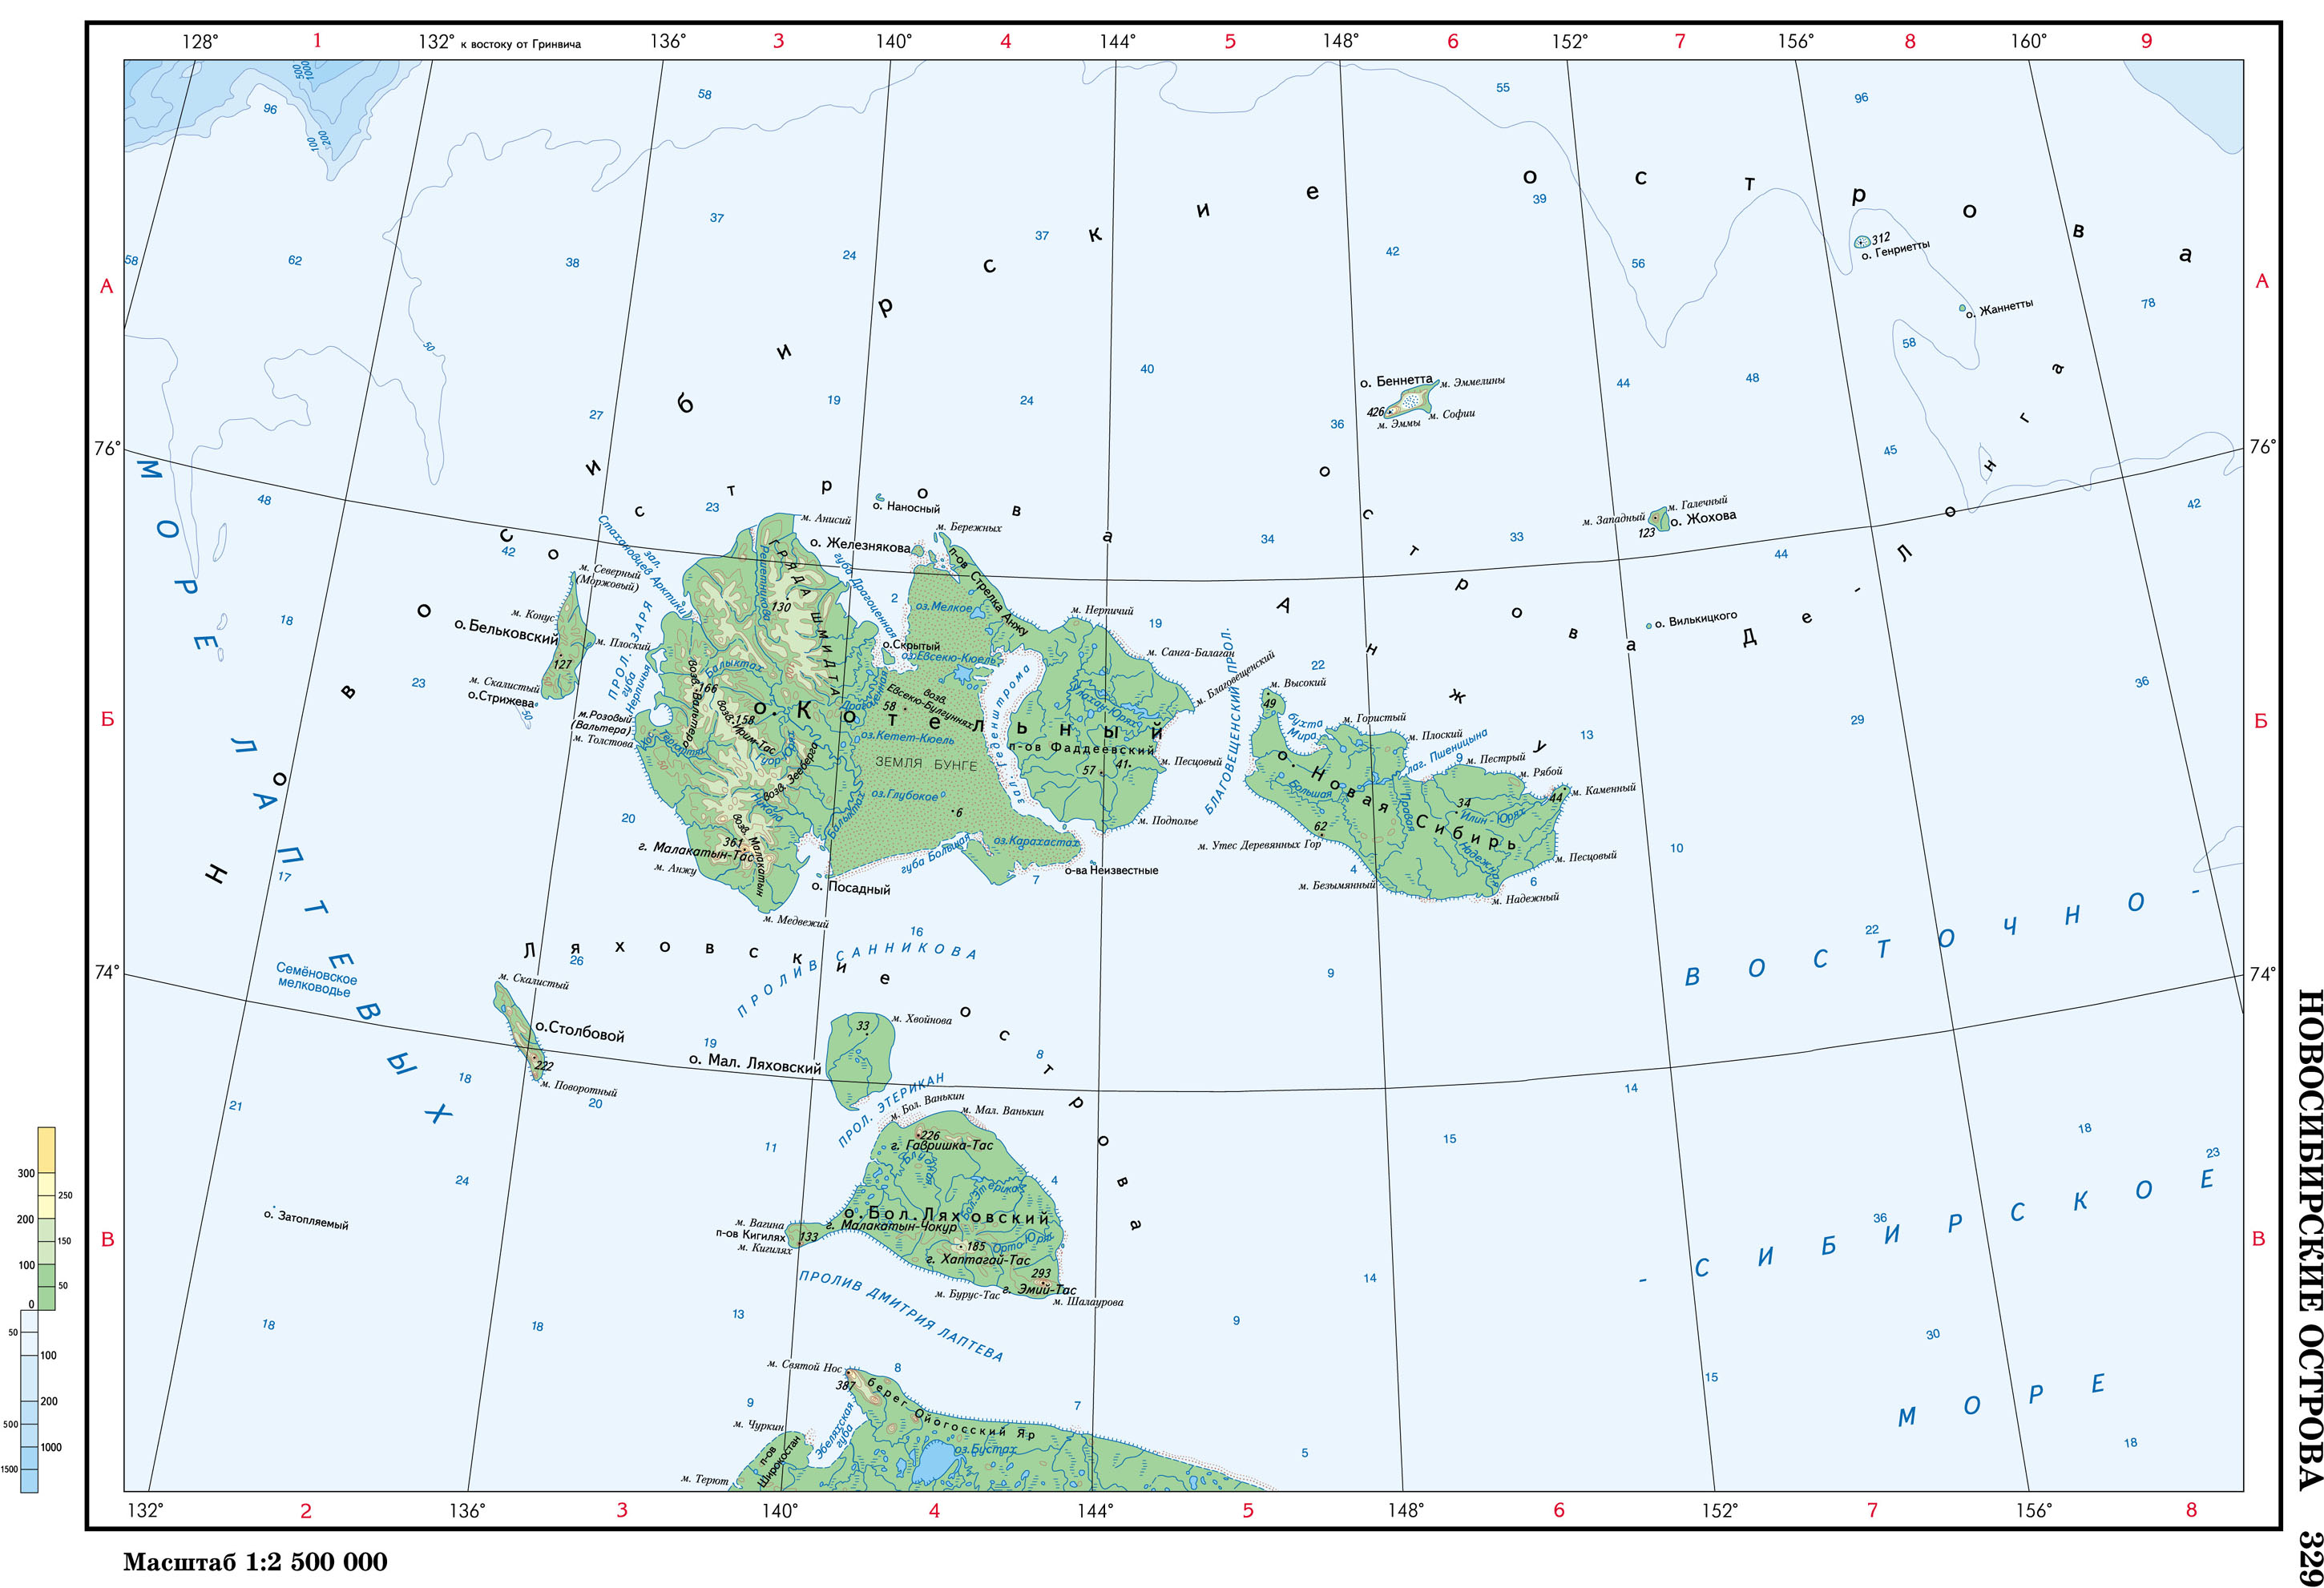 Восточно сибирский остров на карте